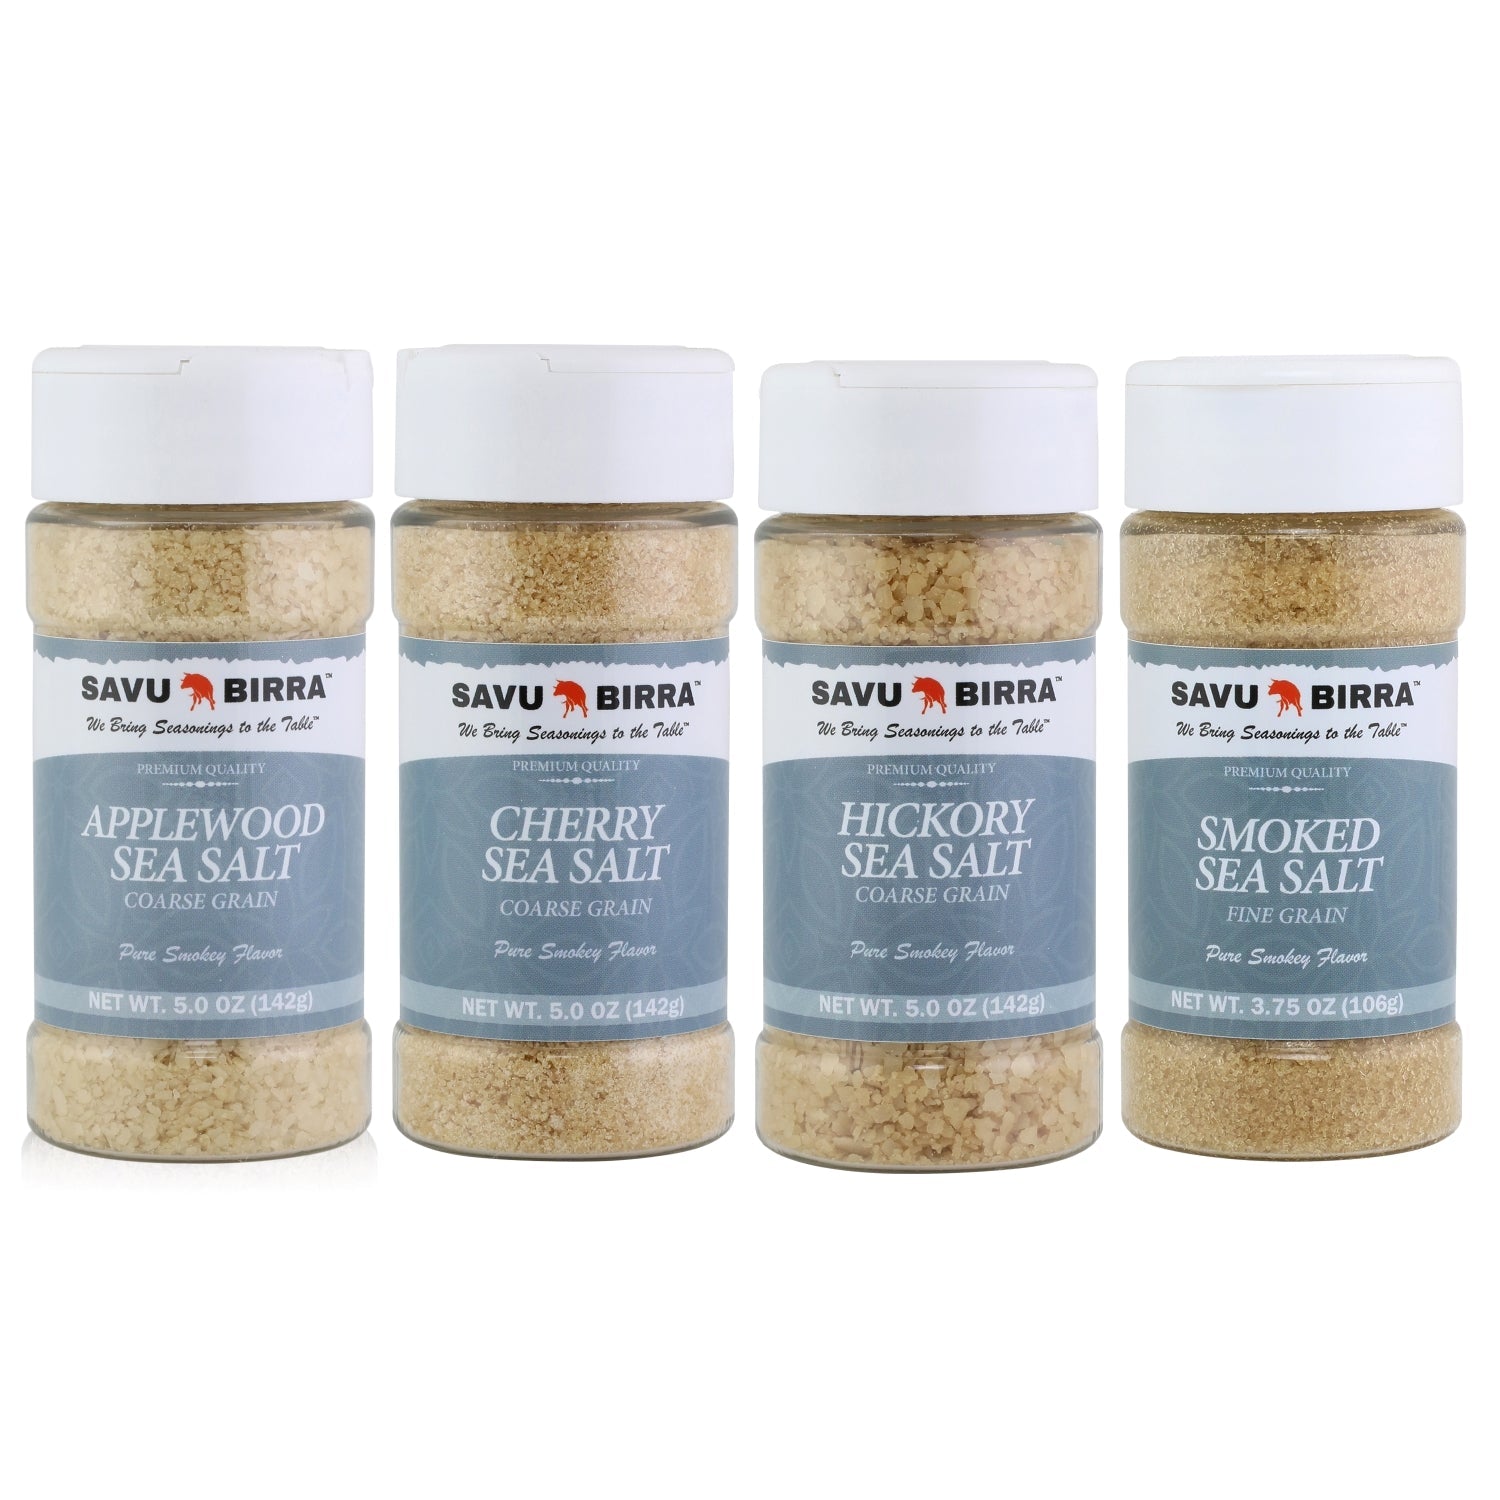 Applewood Sea Salt | Hickory Sea Salt | Smoked Sea Salt | Cherrywood Sea SaltSavu Birra LLC